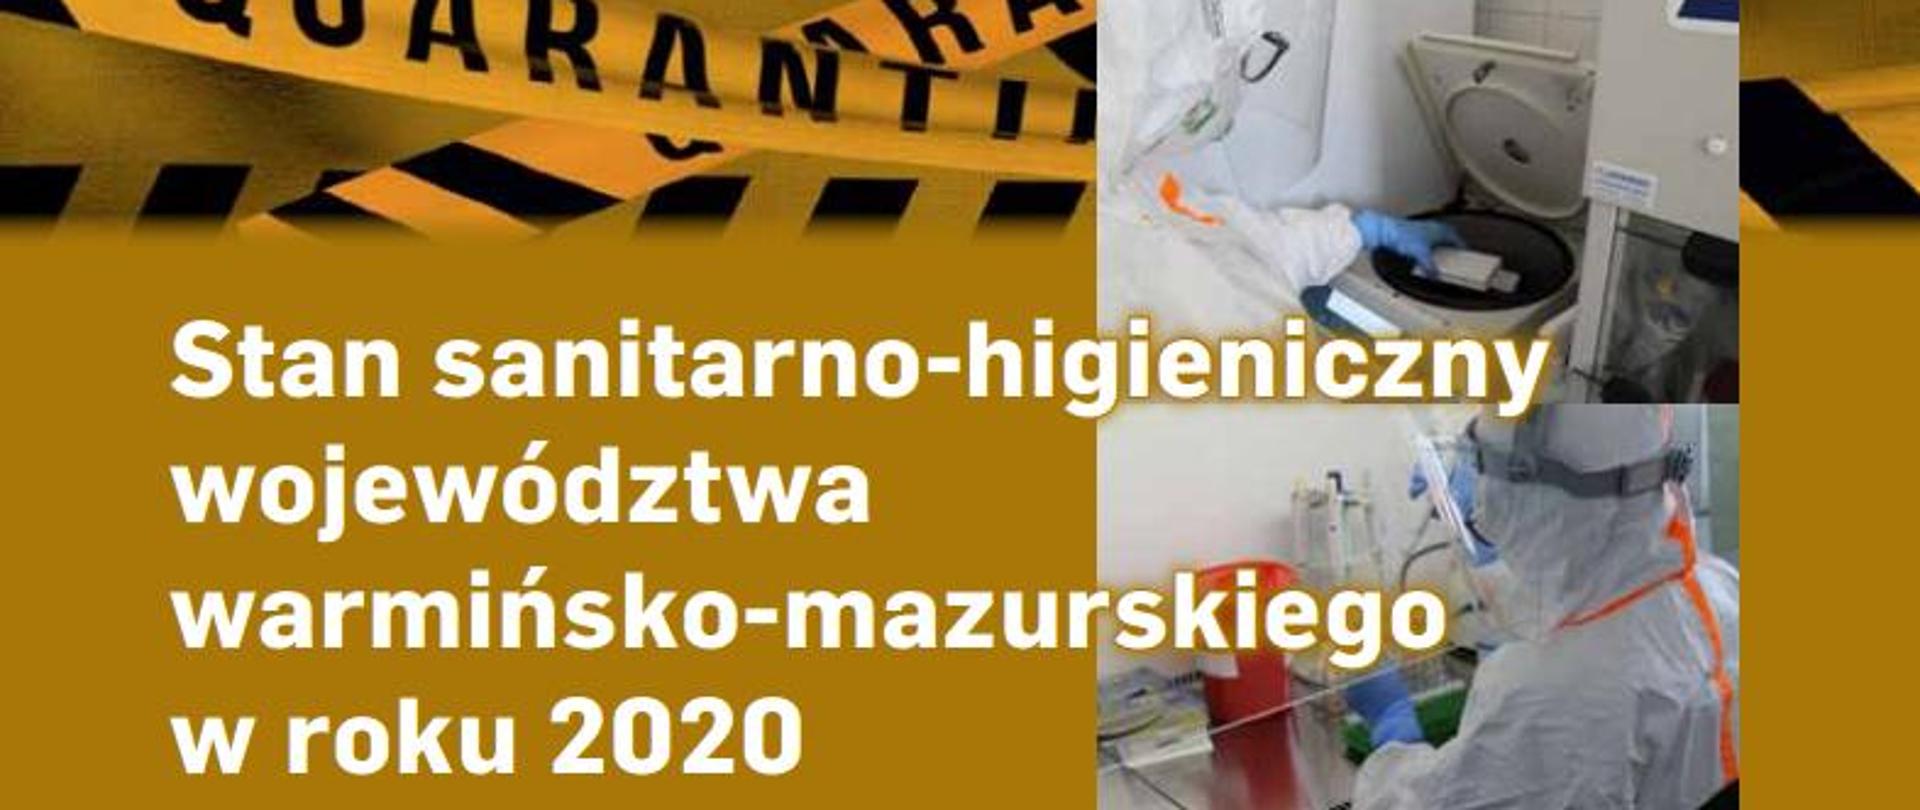 okładka dokumentu z tytułem "Stan sanitarno-higieniczny województwa warmińsko-mazurskiego w roku 2020". Tytuł na żółtym tle z napisem kwarantanna oraz z boku ze zdjęciami pracowników laboratorium podczas prowadzenia badań w strojach zapobiegającyh zakażeniu koronawirusem